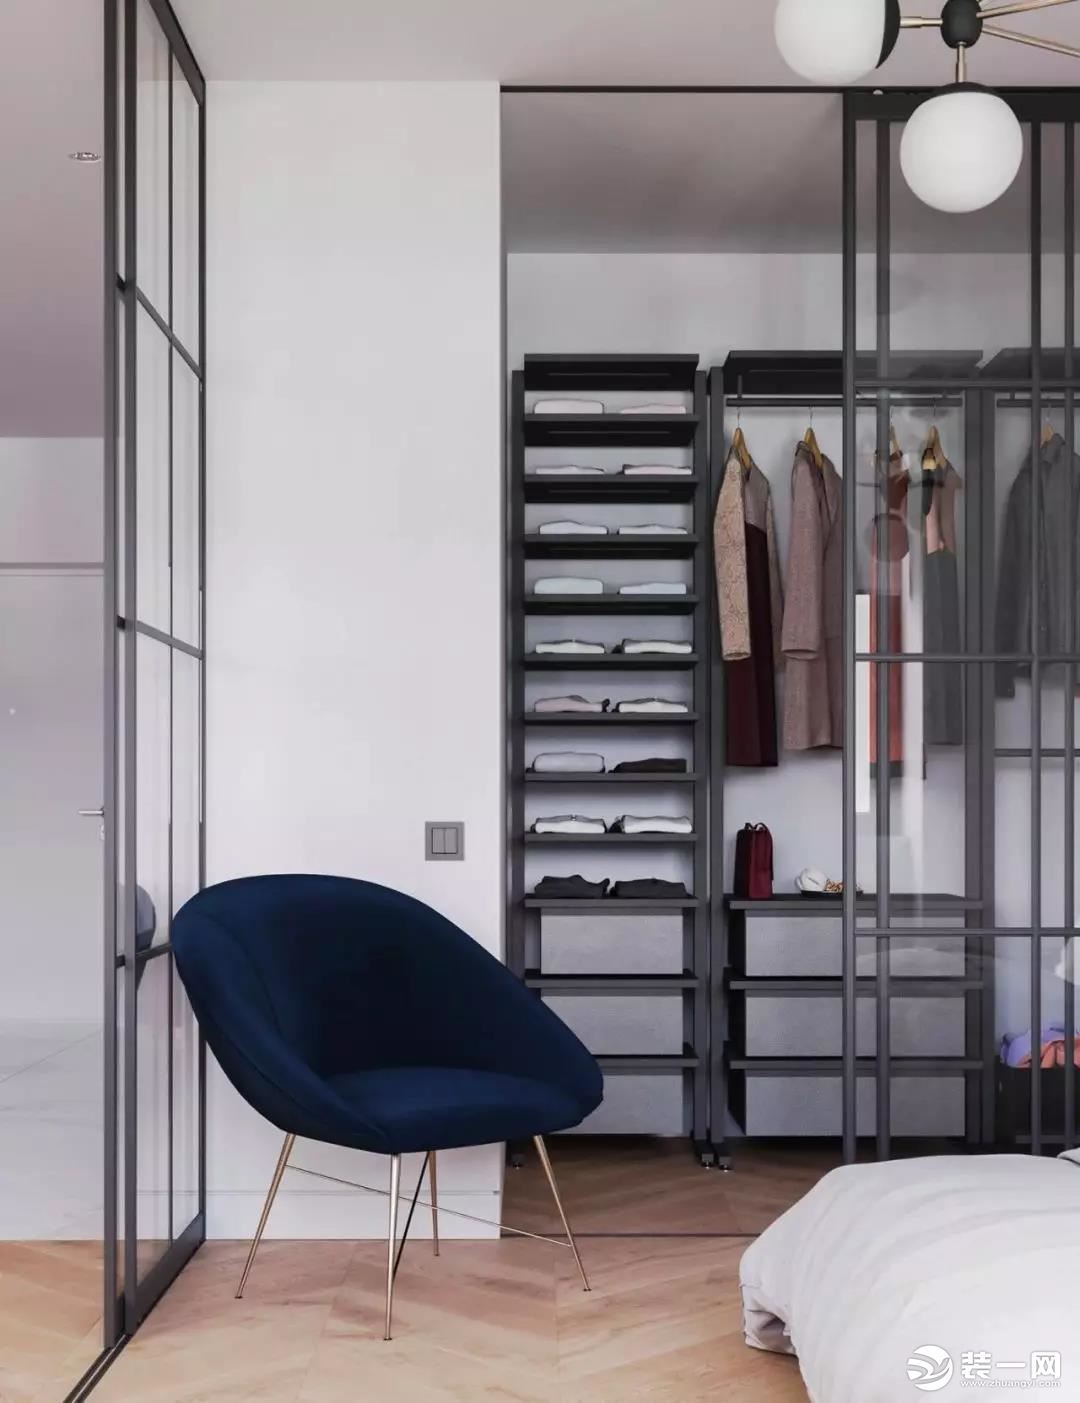 入墙式衣柜设计 嵌入式衣柜设计 卧室衣柜大空间设计